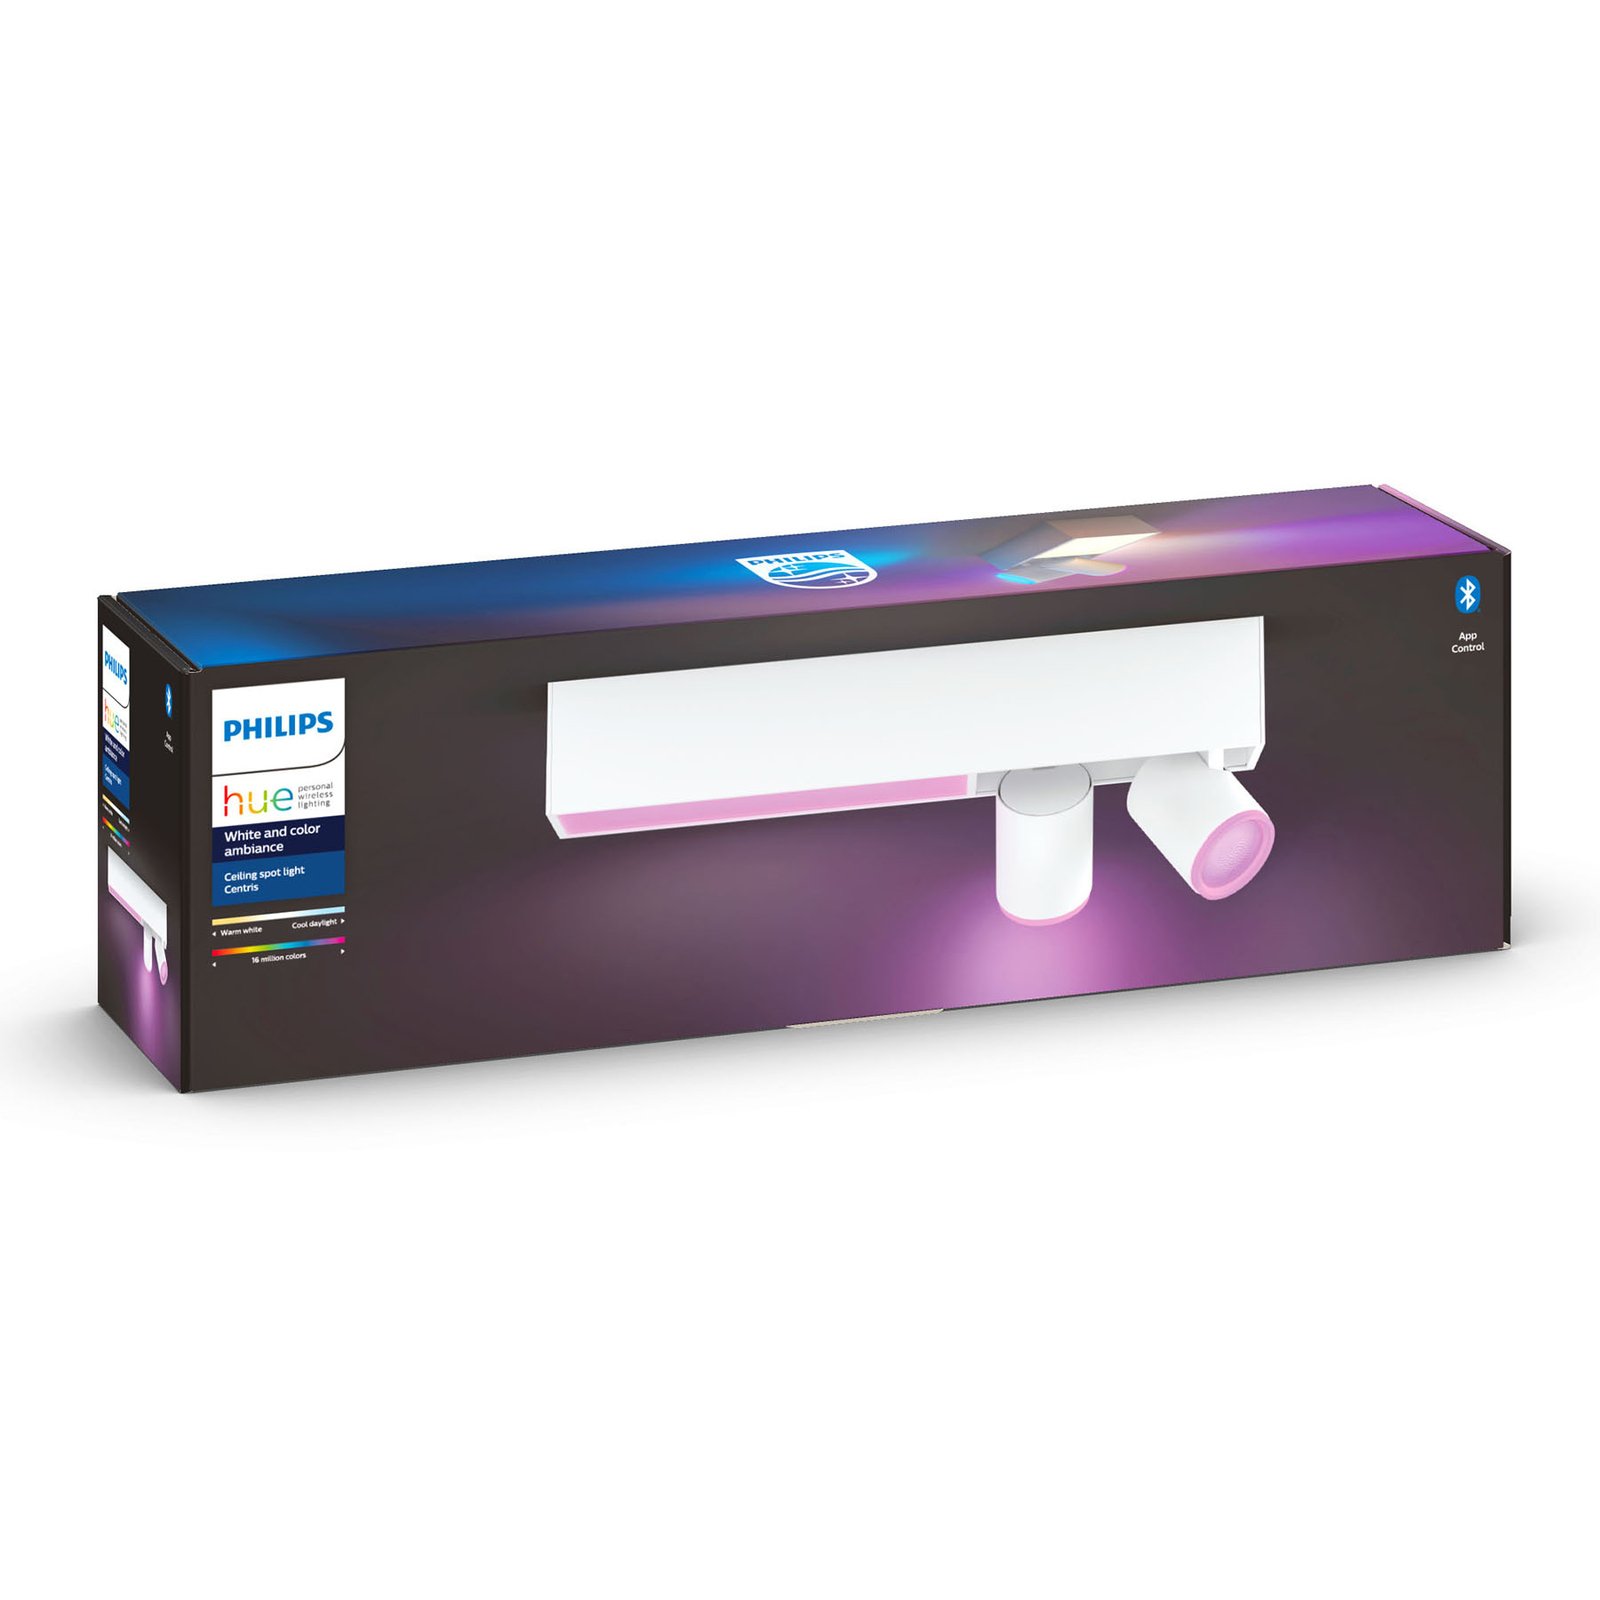 Philips Hue LED-spot 2 lyskilder, hvit